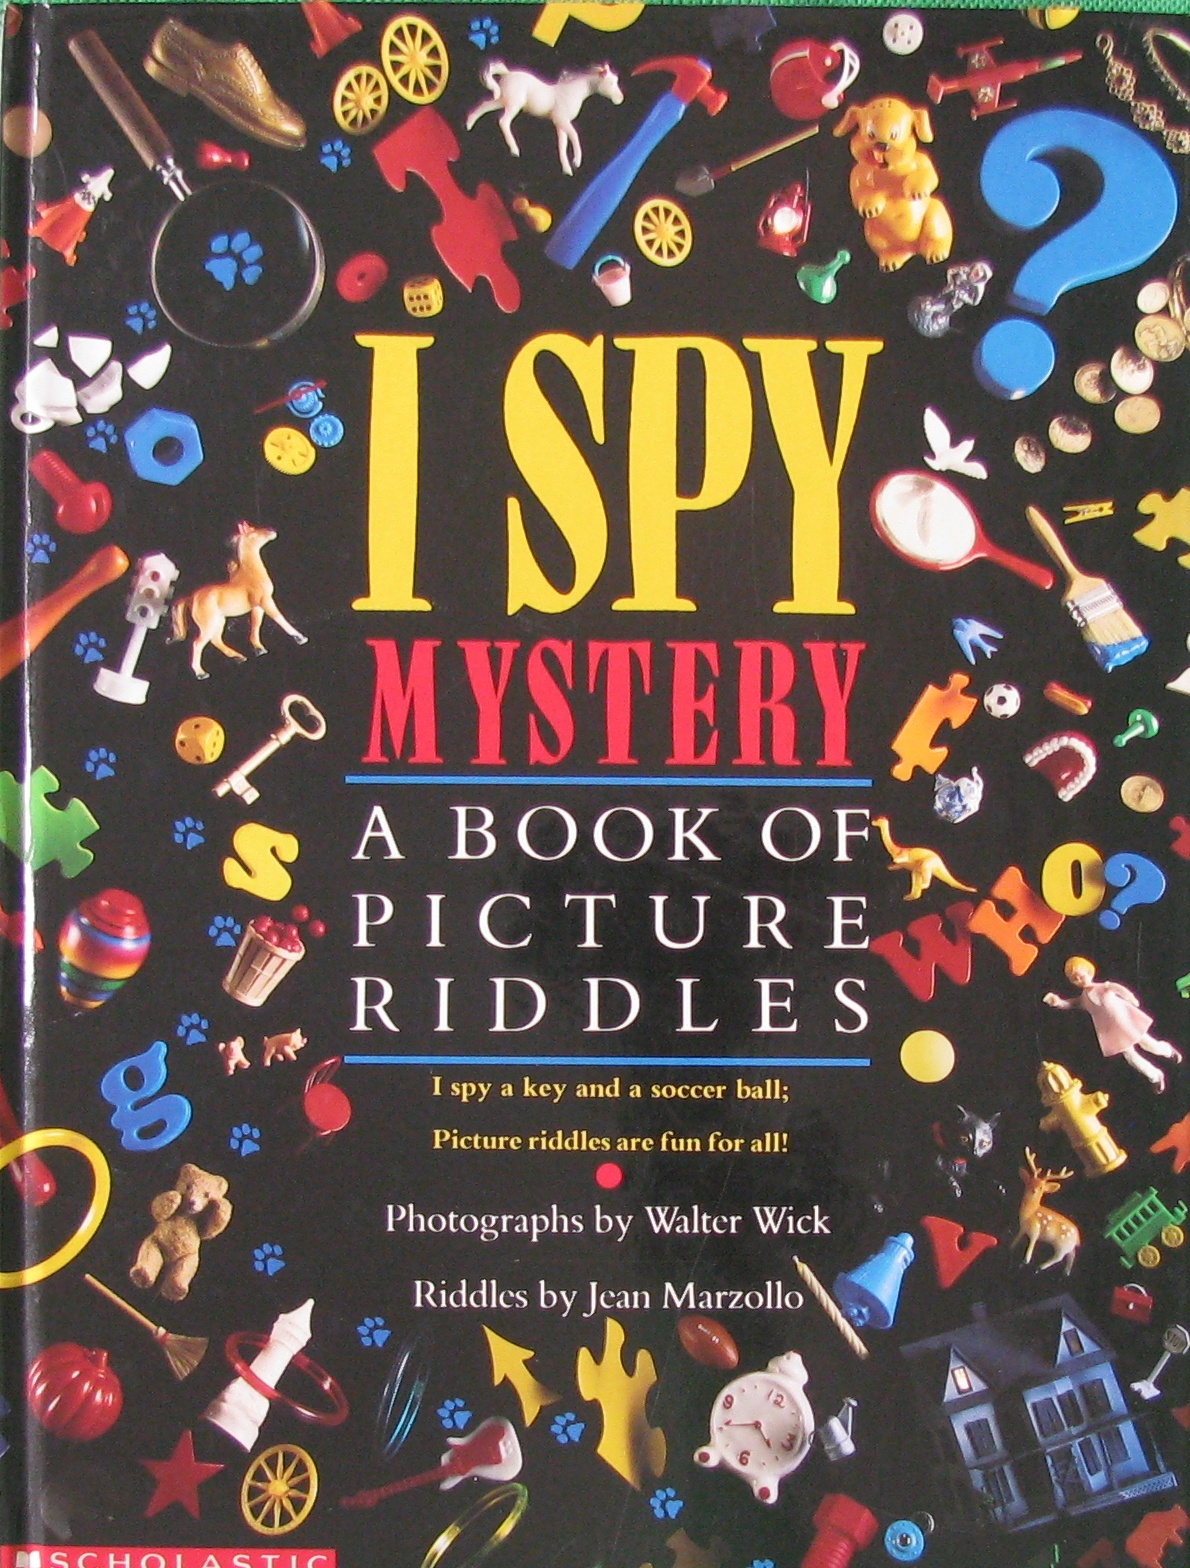 I Spy Mystery by Walter Wick